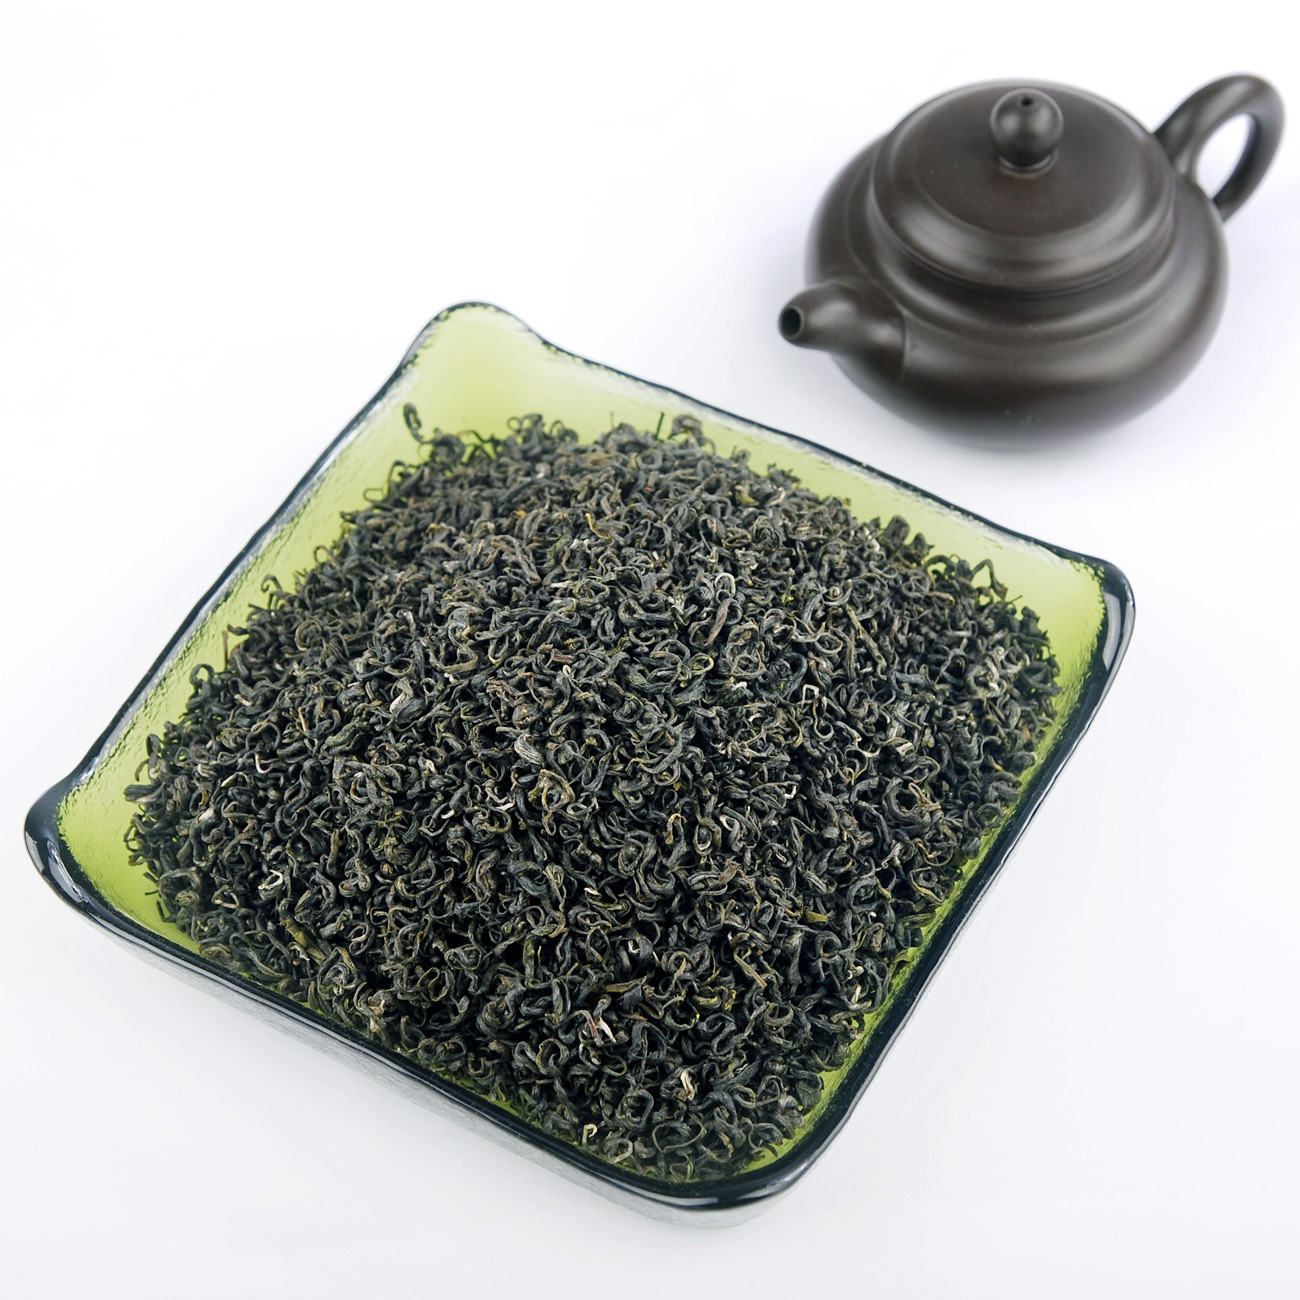 庐山云雾茶的形状和特点—绿润多毫香幽如兰